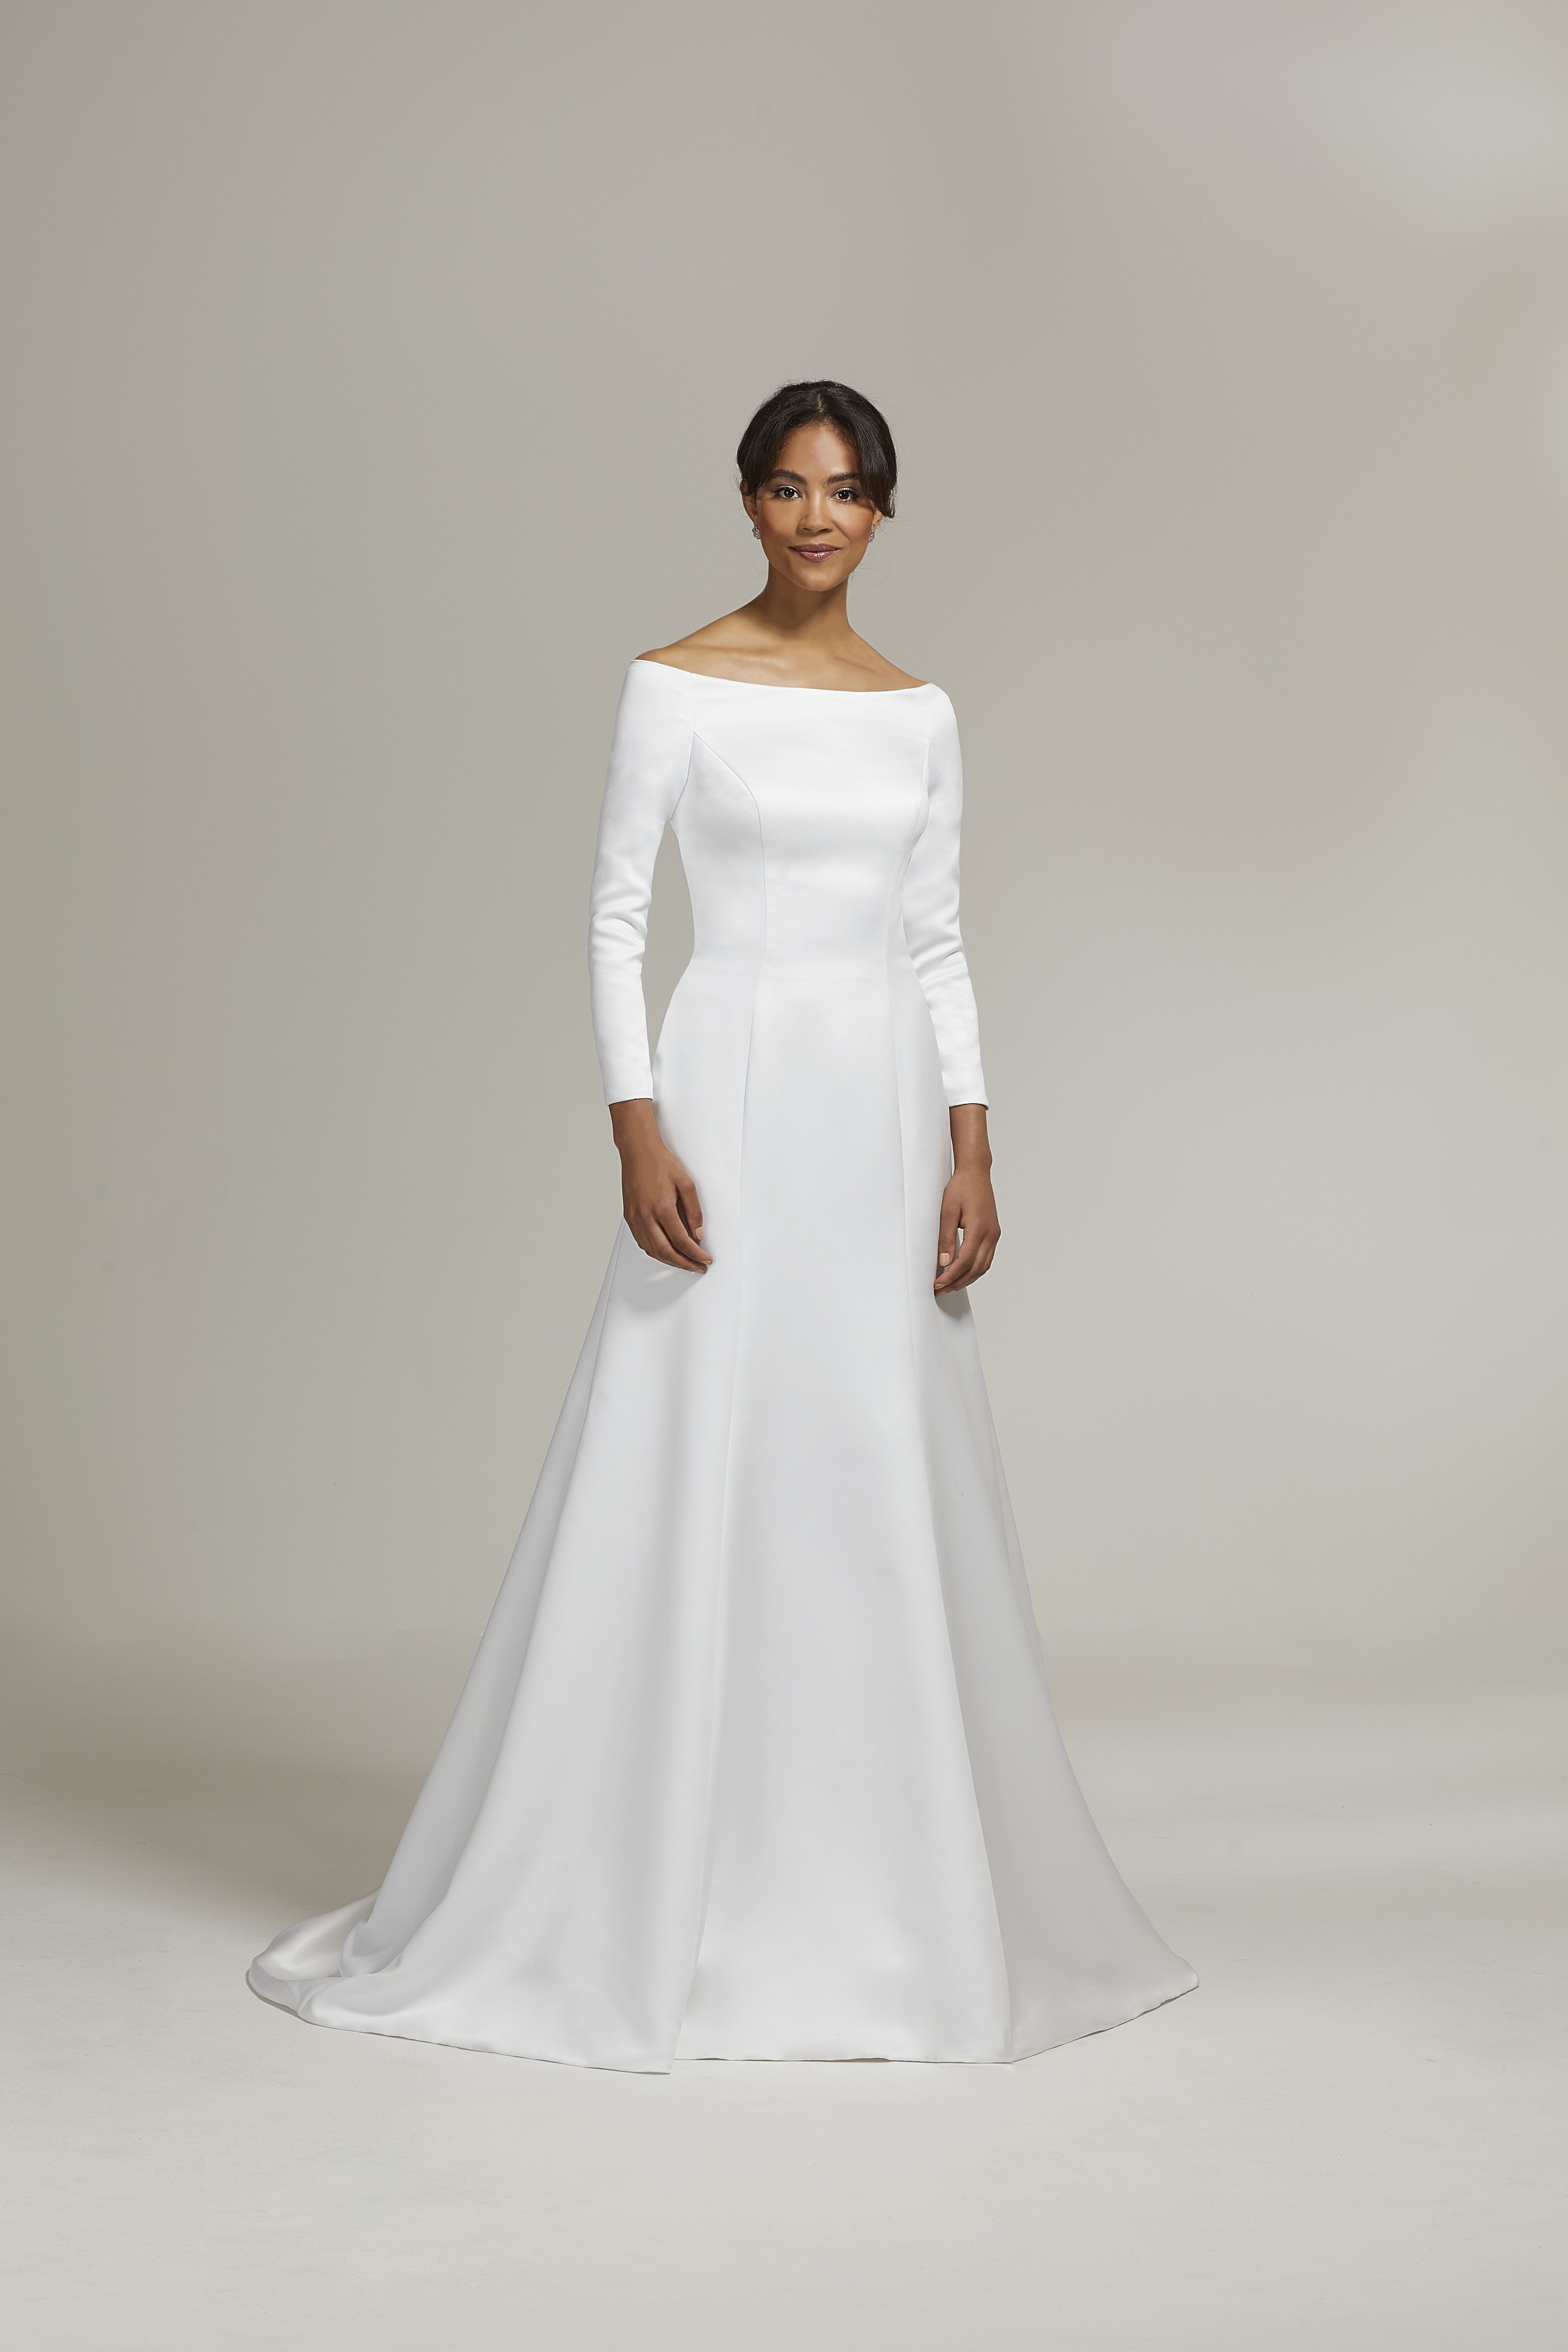 markle wedding gown